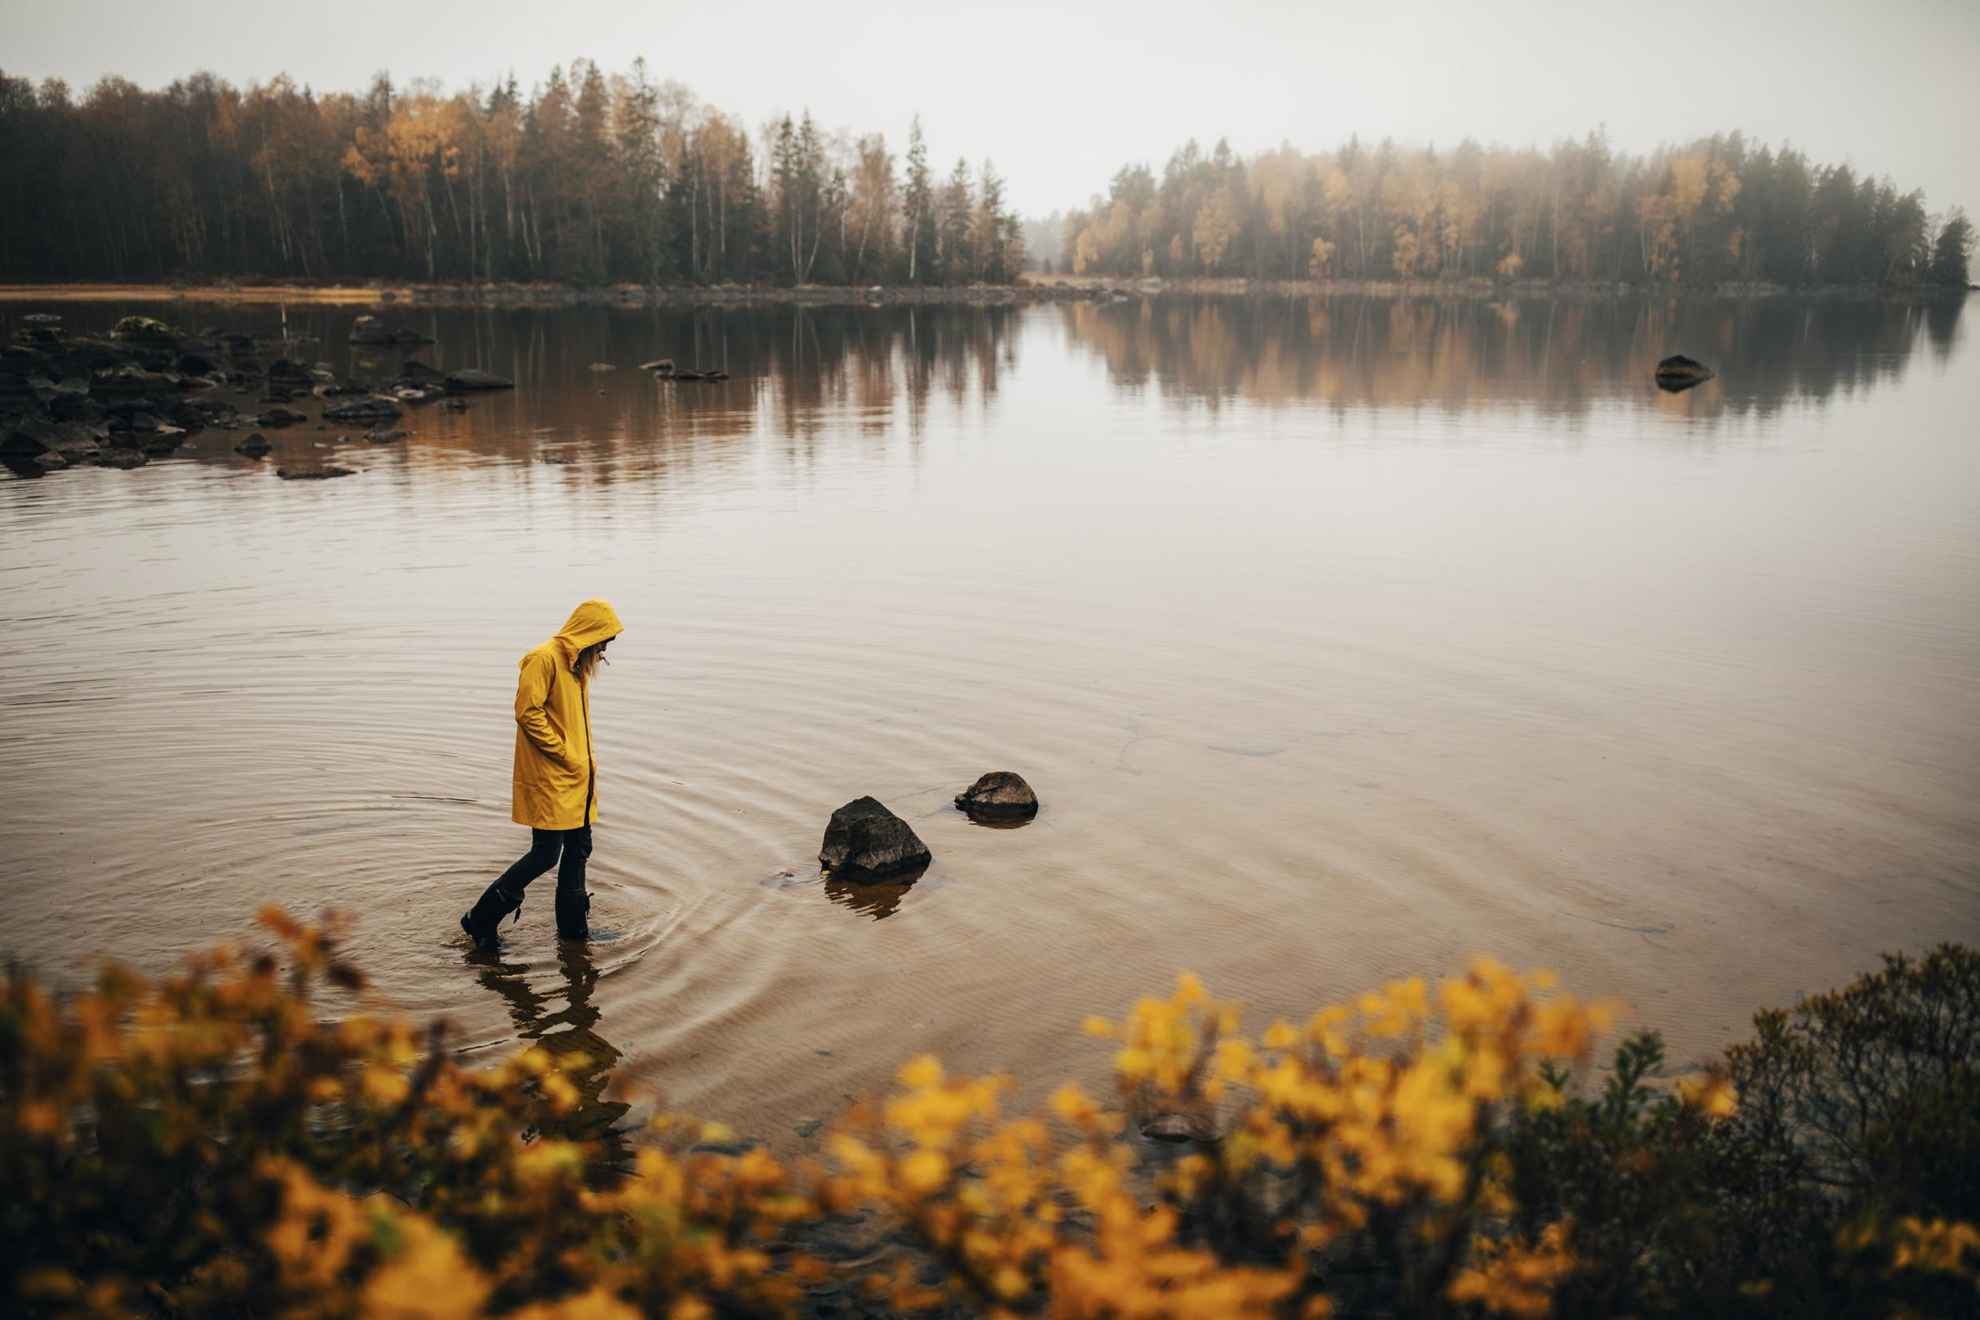 Une personne dans un imperméable jaune et avec des bottes en caoutchouc marche dans l'eau. Il y a des arbres aux feuilles jaunes au bord du lac.